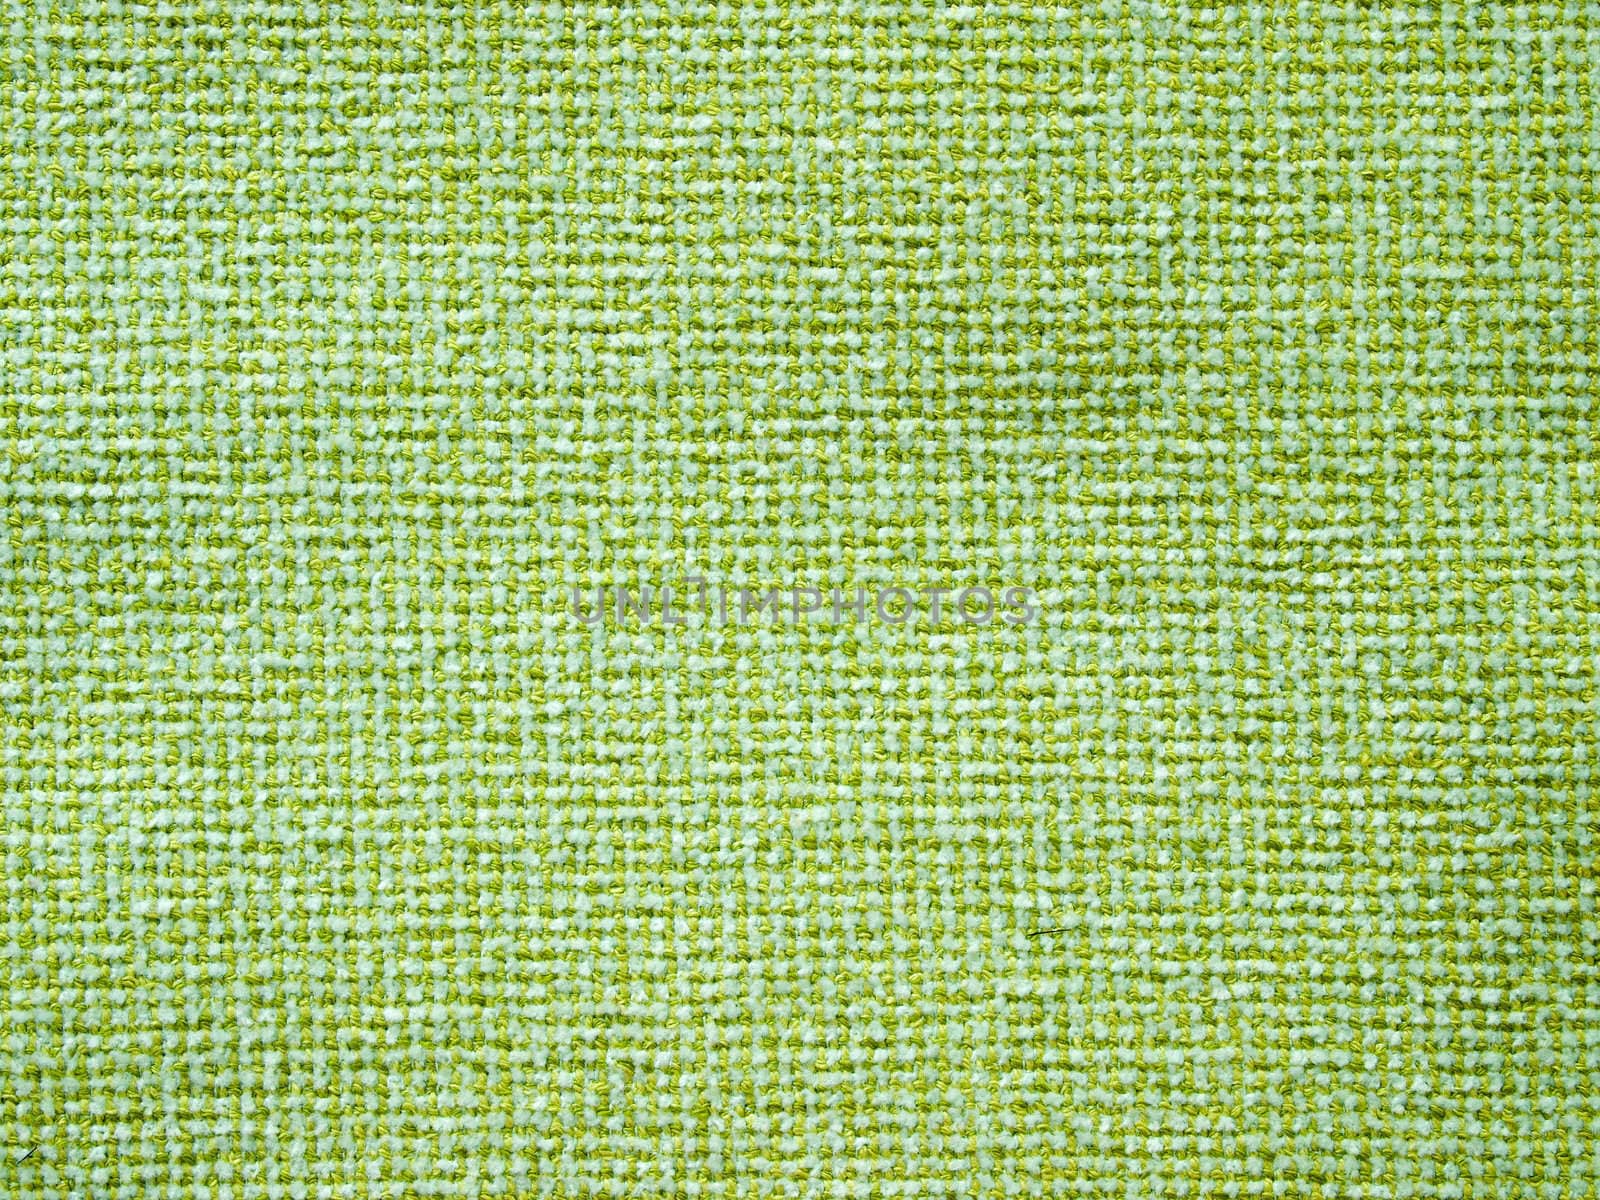 Light green fabric by nuttakit